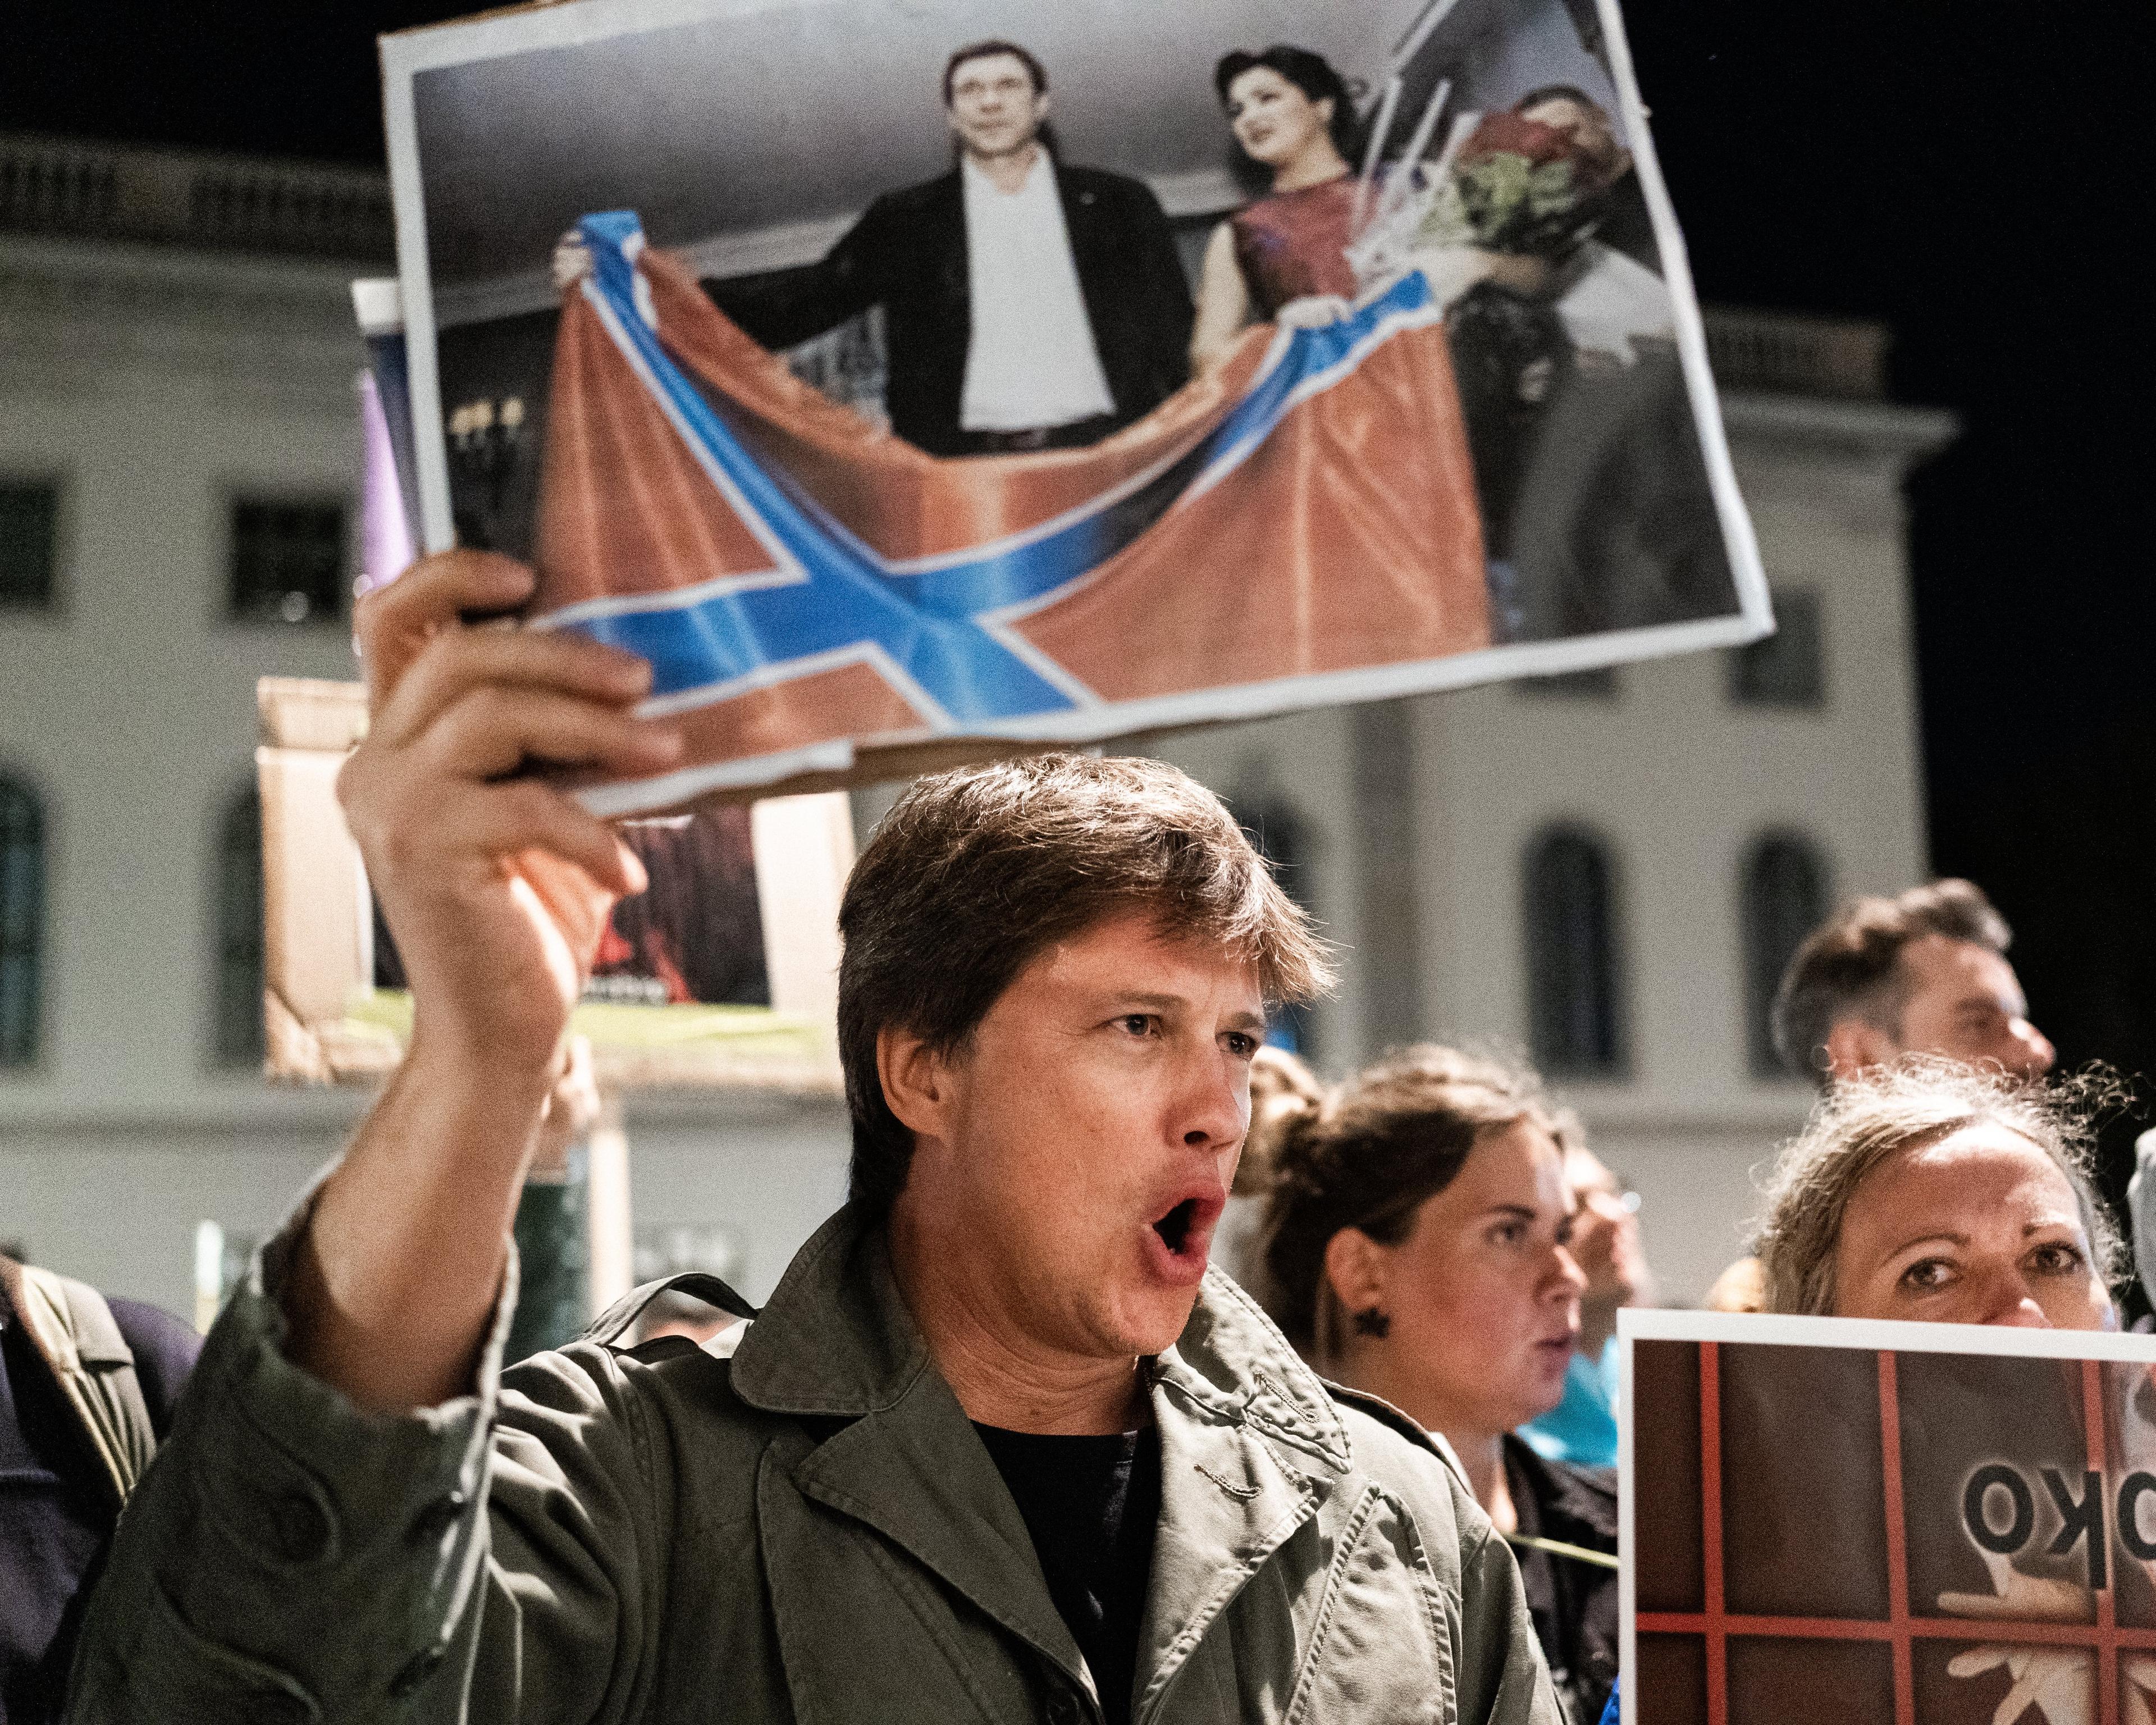 uczestnik protestu ulicznego pokazuje duże zdjęcie z kobietą i mężczyzną trzymającymi flagę rosyjską